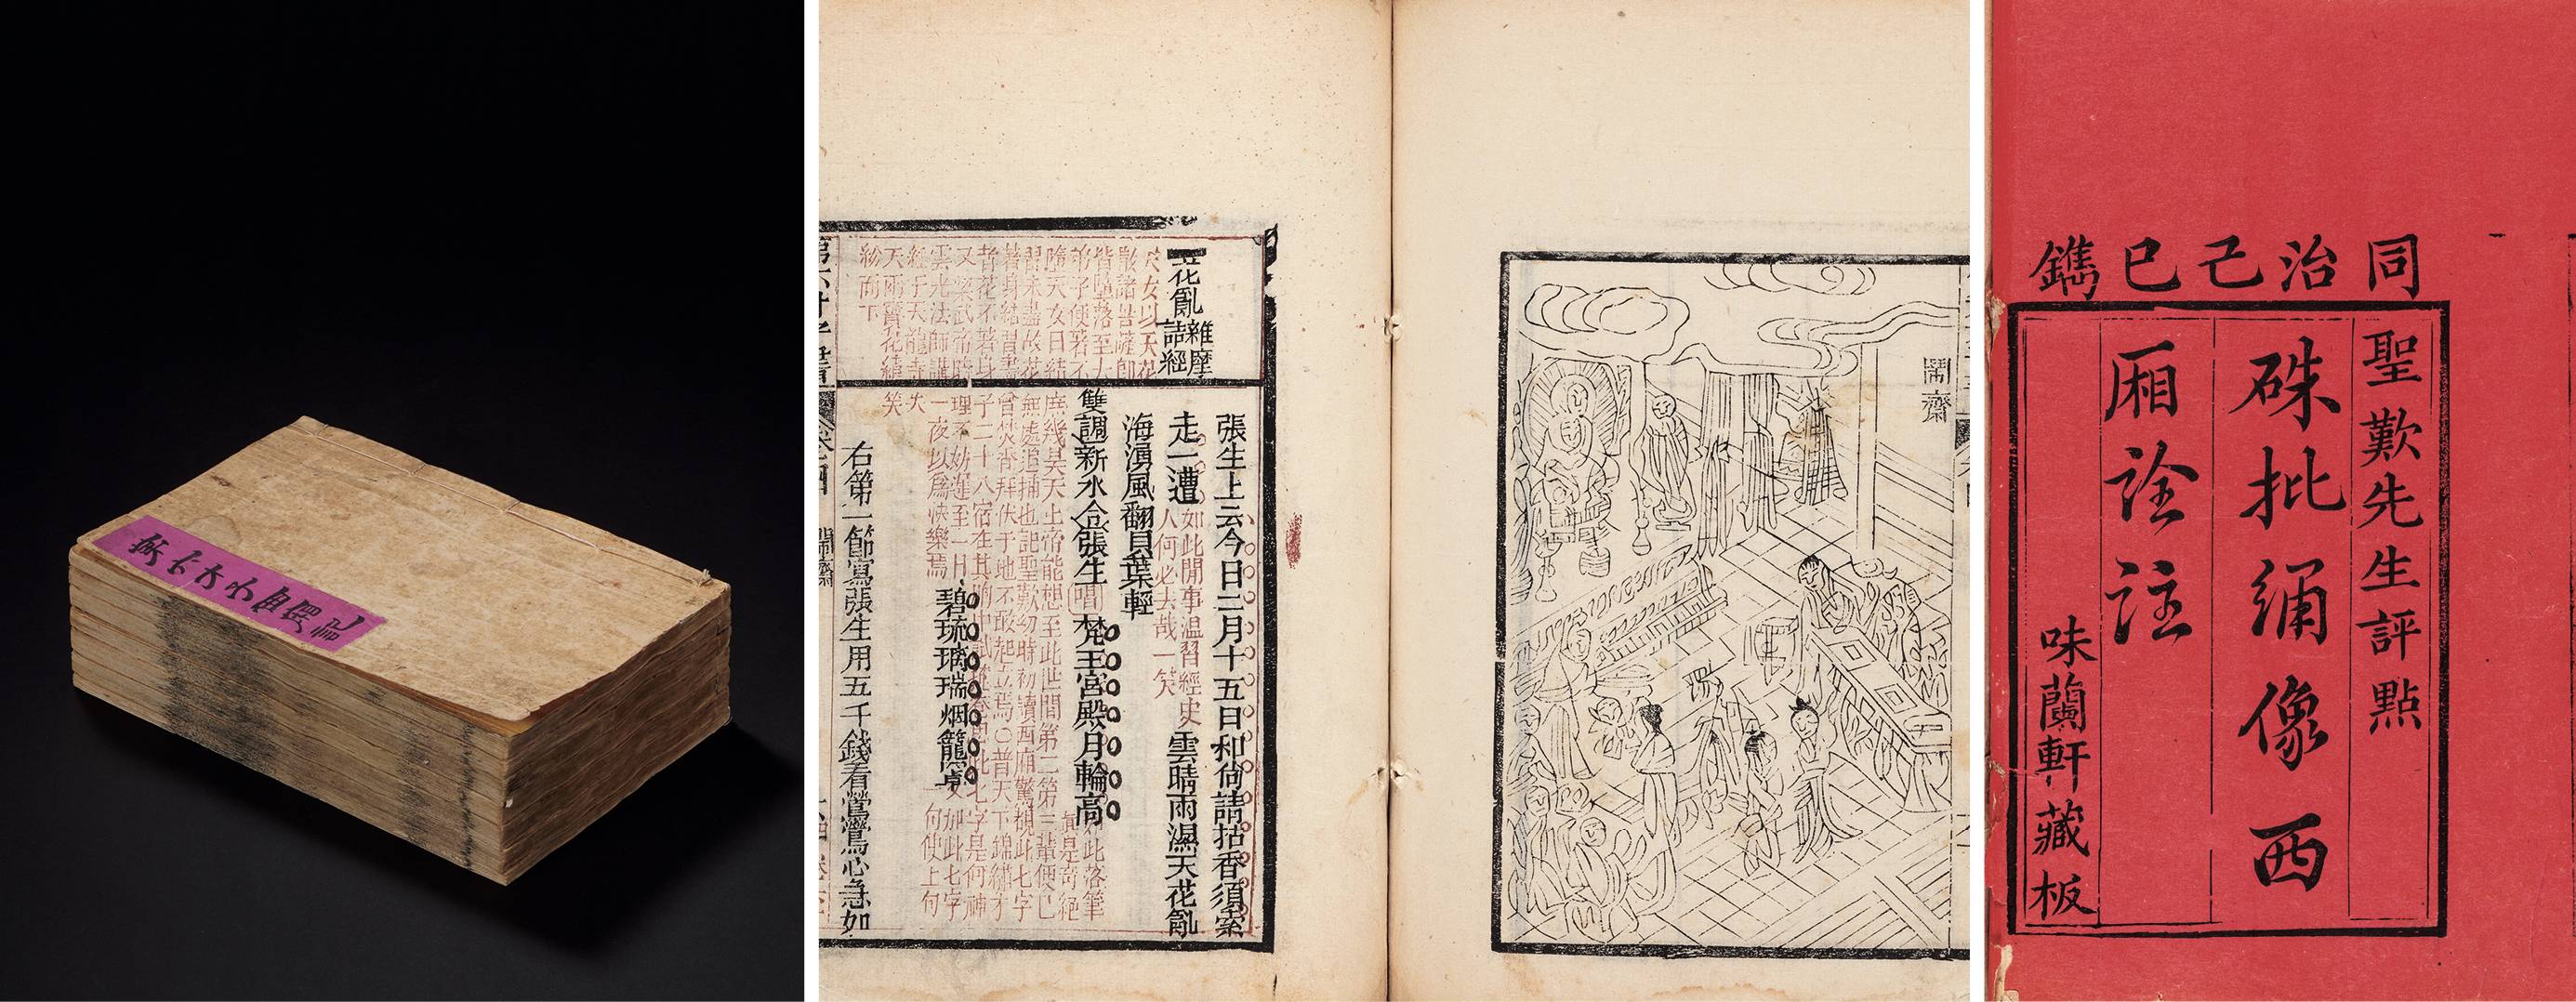 批绣像西厢诠注八卷·附西厢诗文 清同治八年（1869）味兰轩朱墨套印本